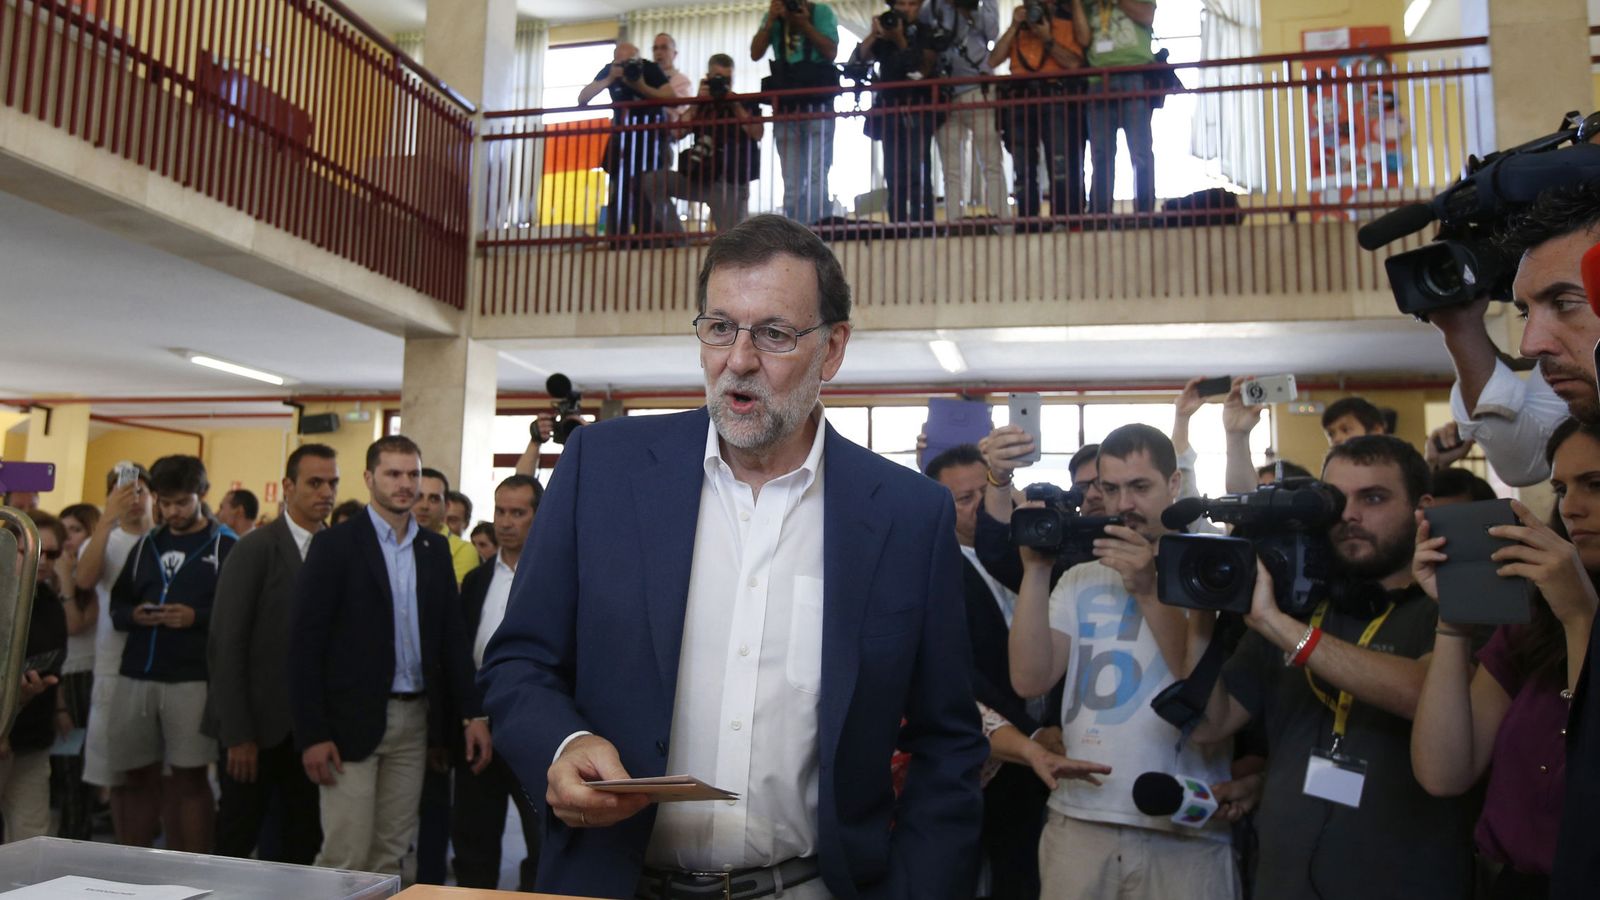 Foto: Mariano Rajoy vota en una de las urnas del colegio Bernadette del distrito madrileño de Aravaca, el pasado 26 de junio. (EFE)